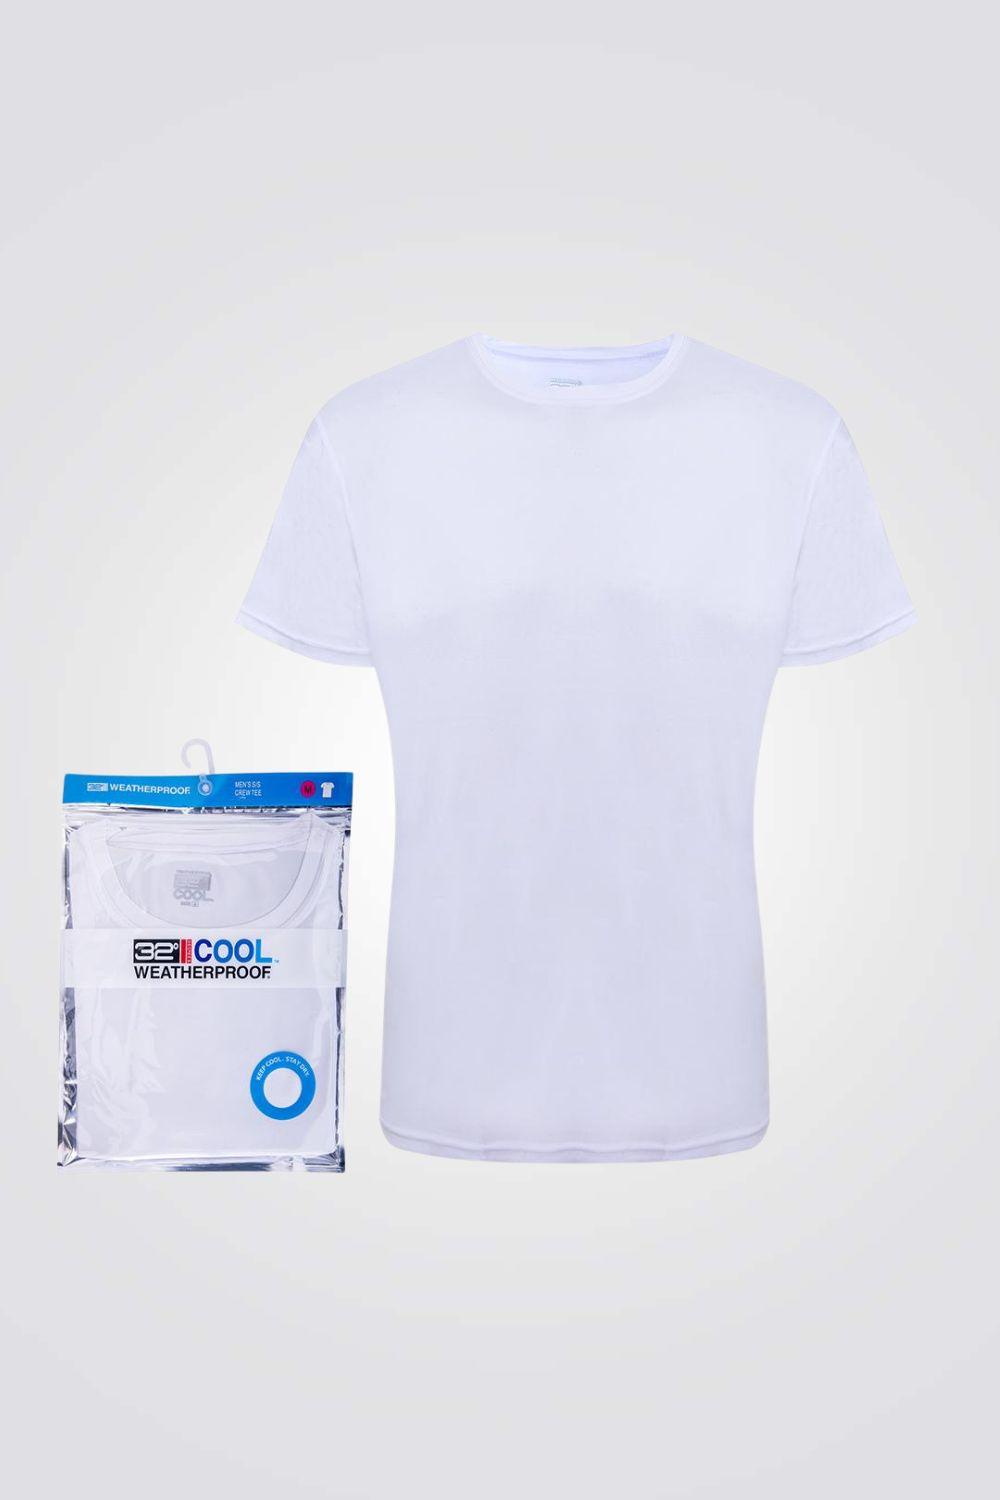 COOL 32 - חולצת דרייפיט לגבר בצבע לבן - MASHBIR//365